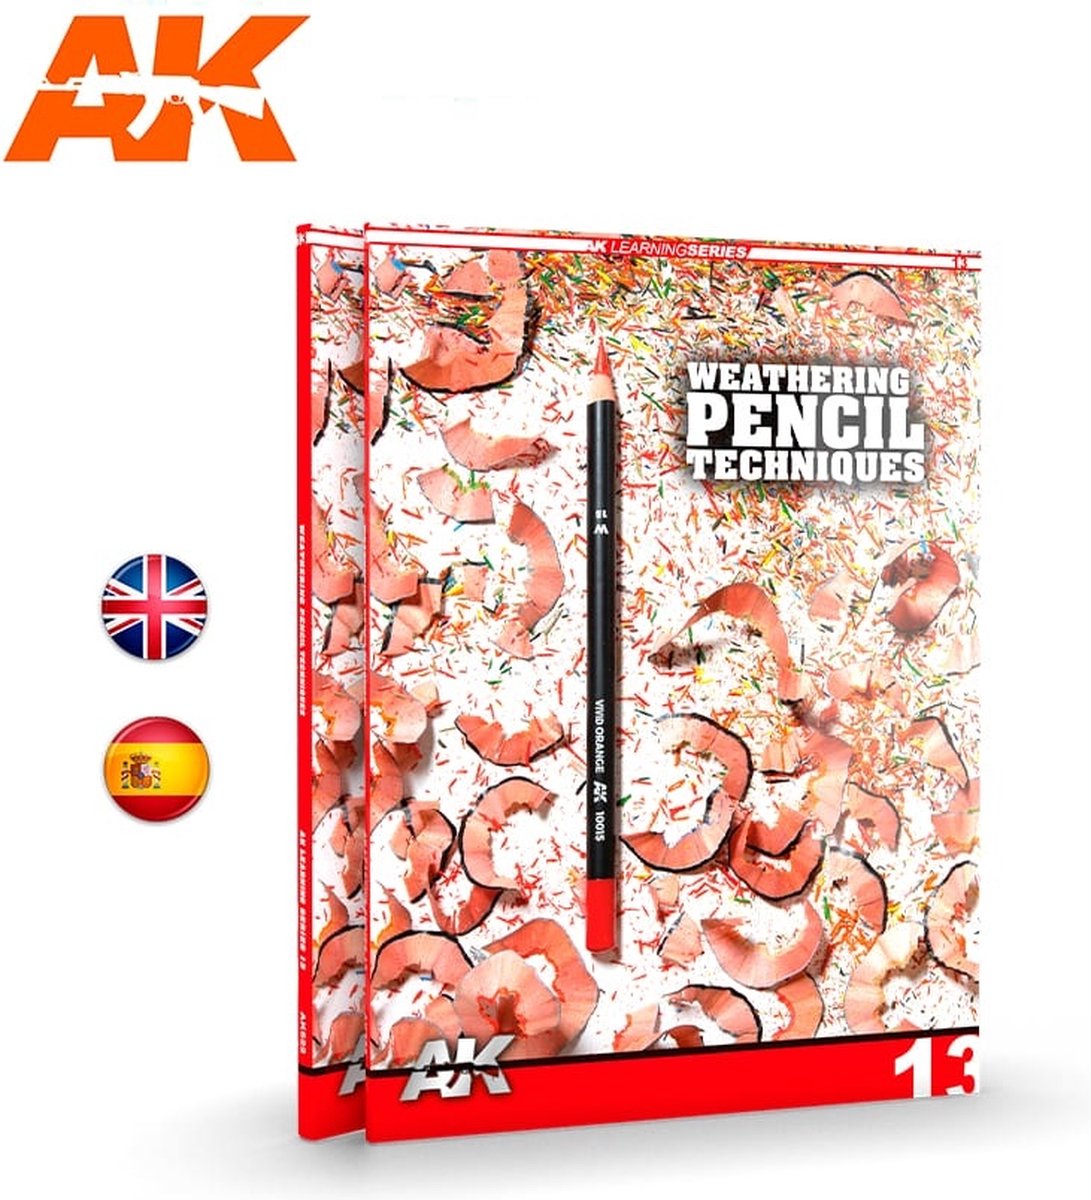 Ak Learning 13. Weathering Pencil Techniques English - AK-Interactive - AK-522 - AK interactive